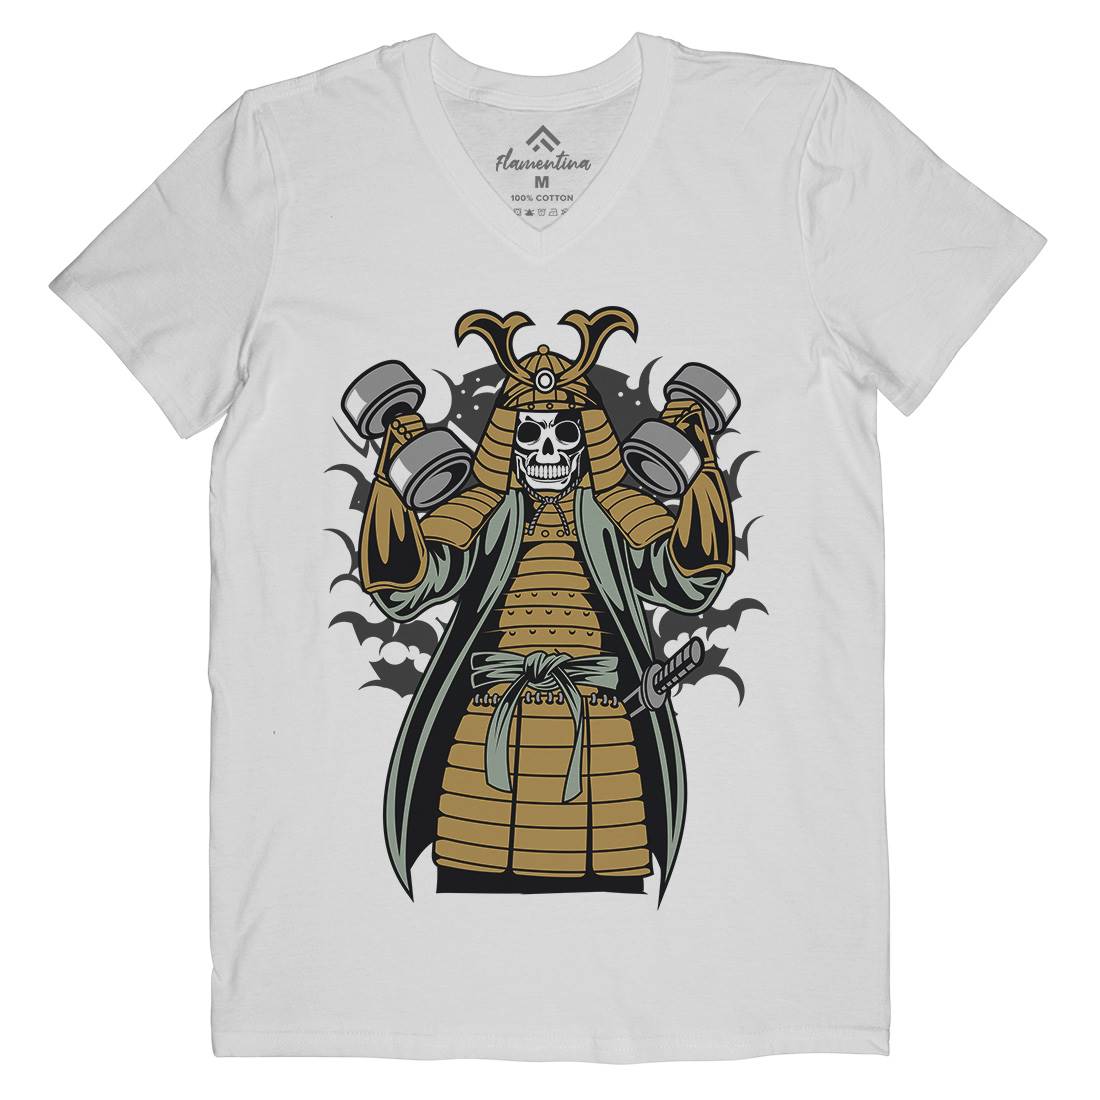 Samurai Mens V-Neck T-Shirt Gym C433